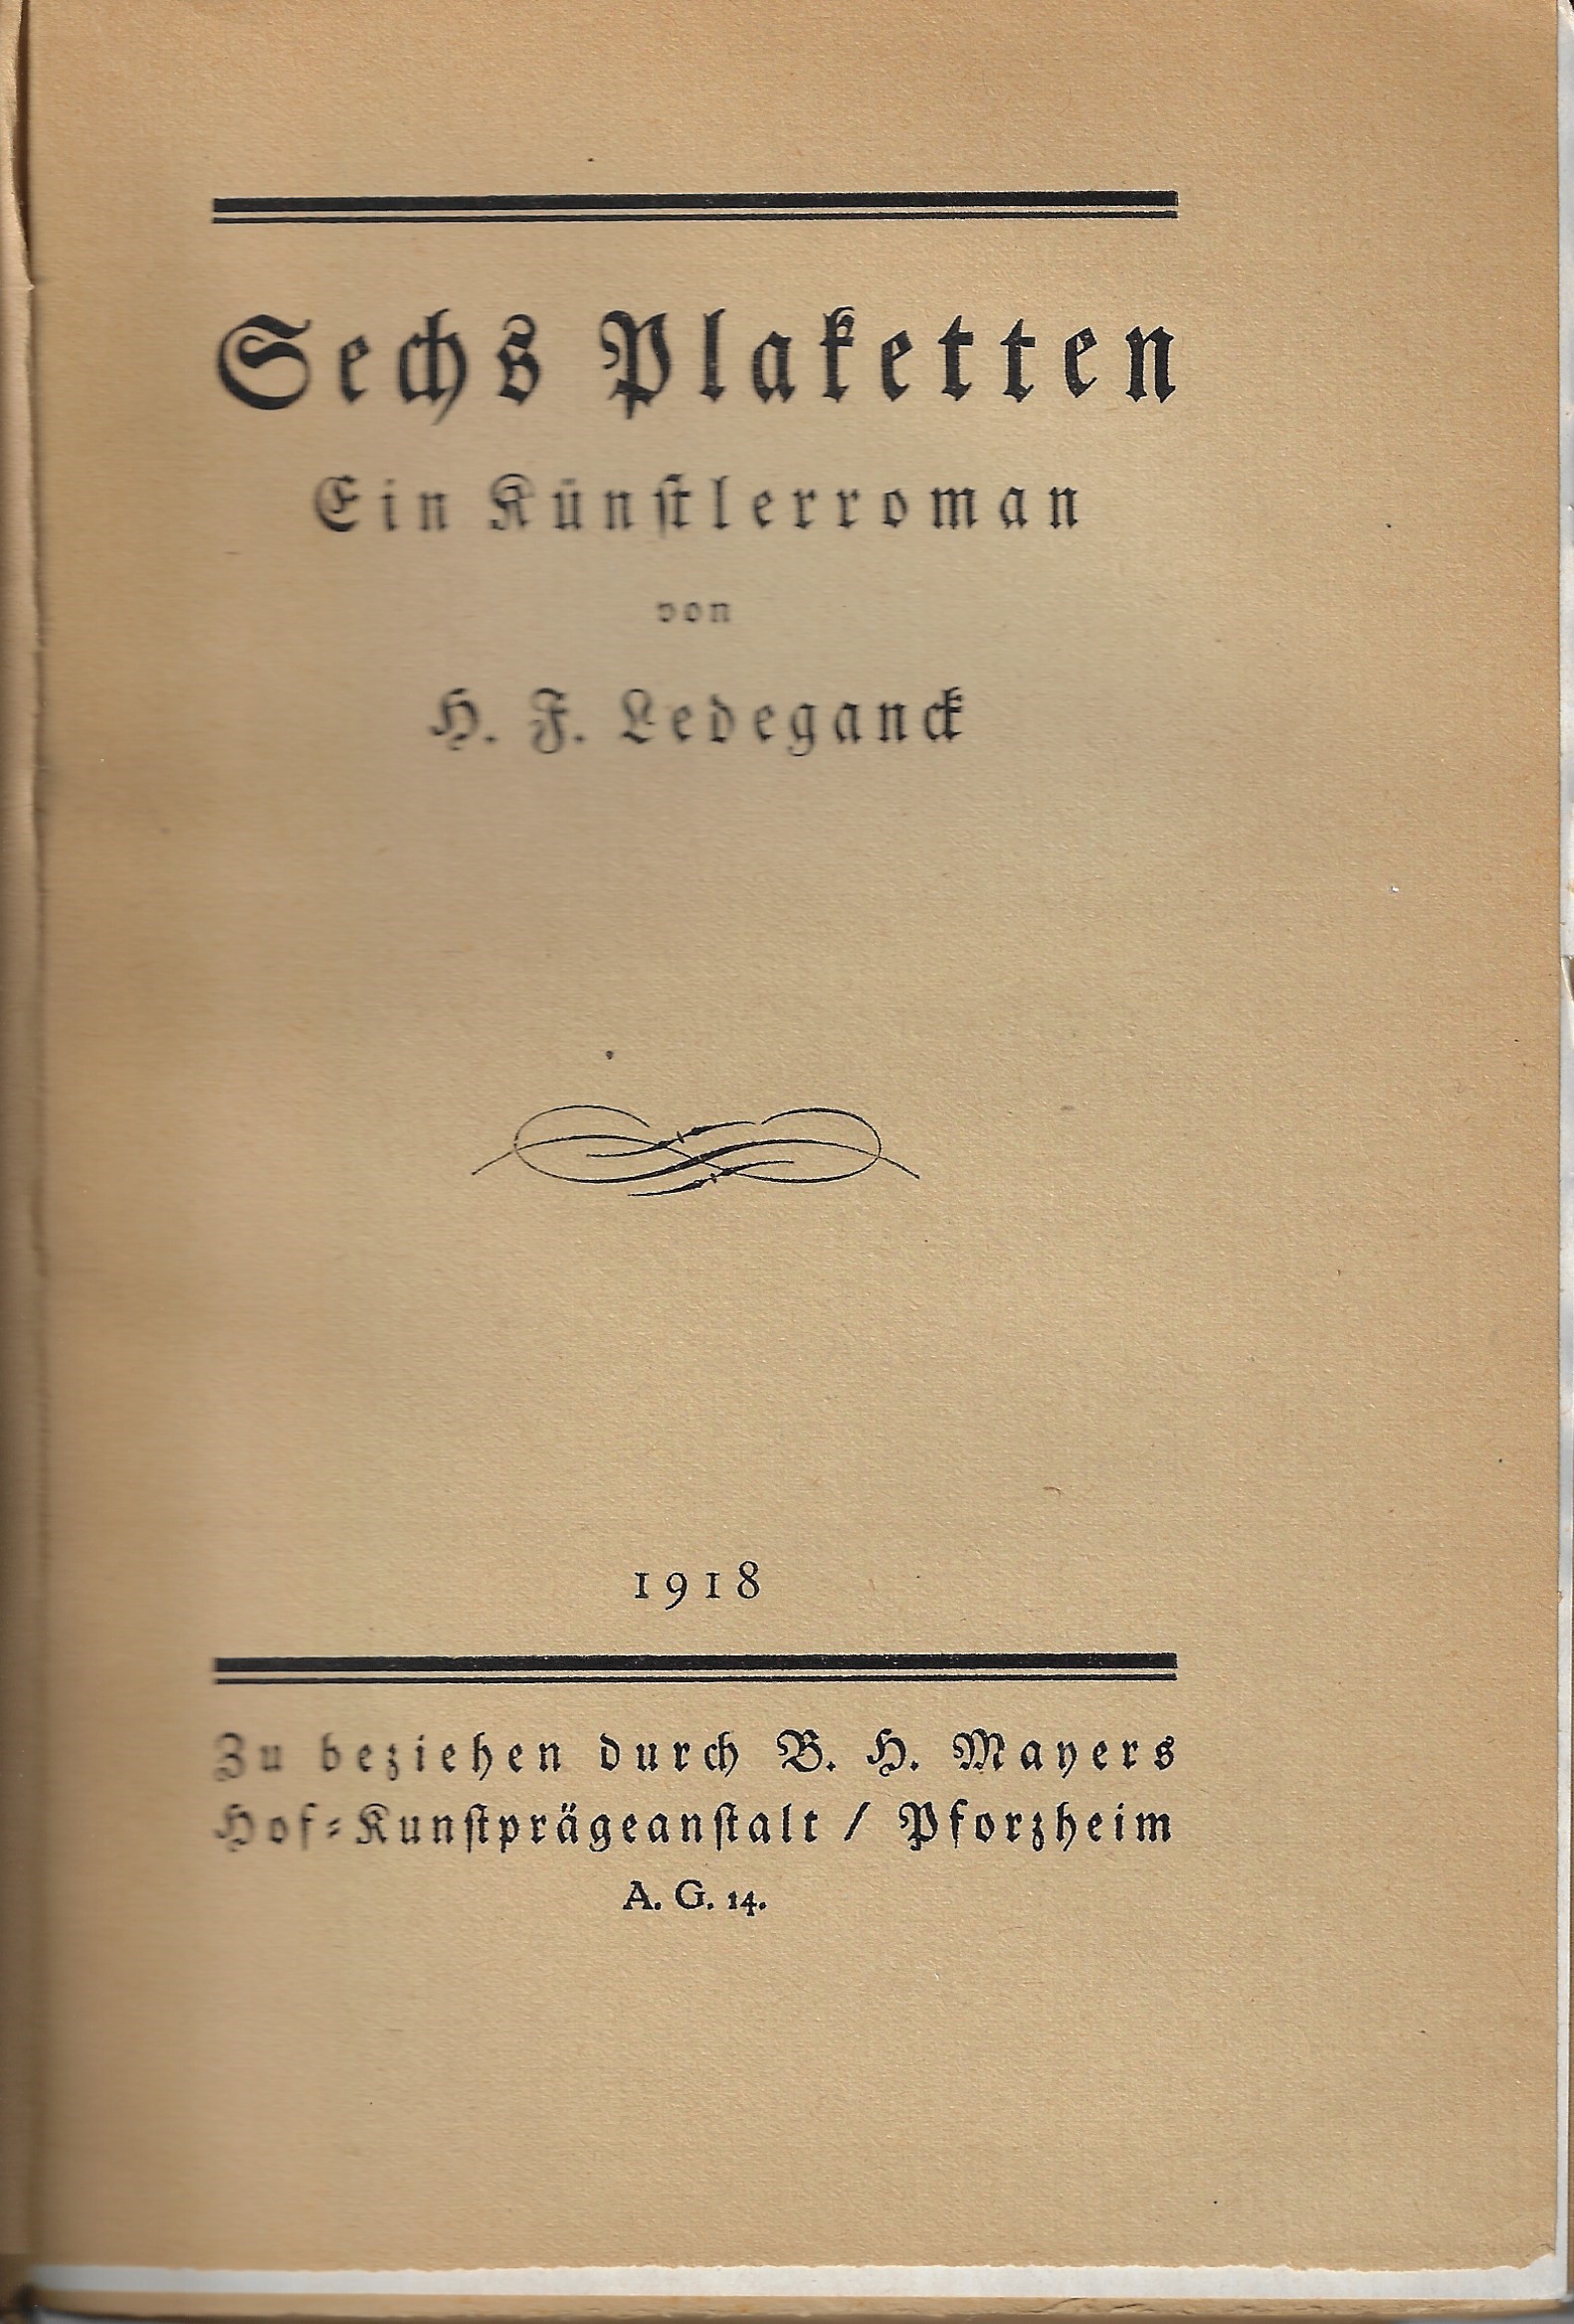 1918 - erste Seite des Buches Sechs Plaketten